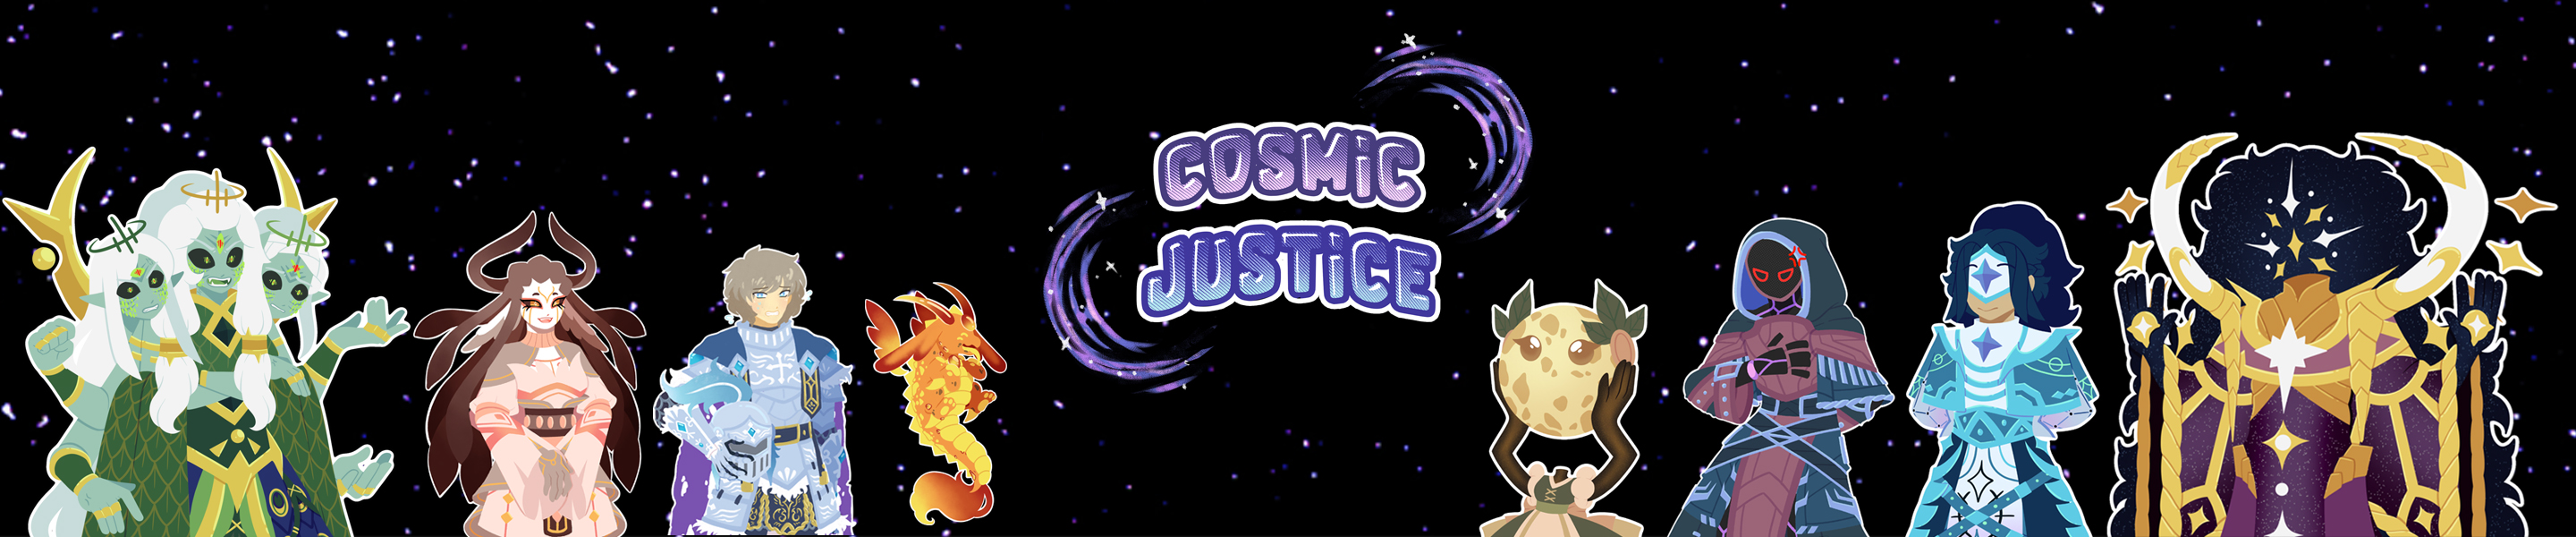 Cosmic Justice